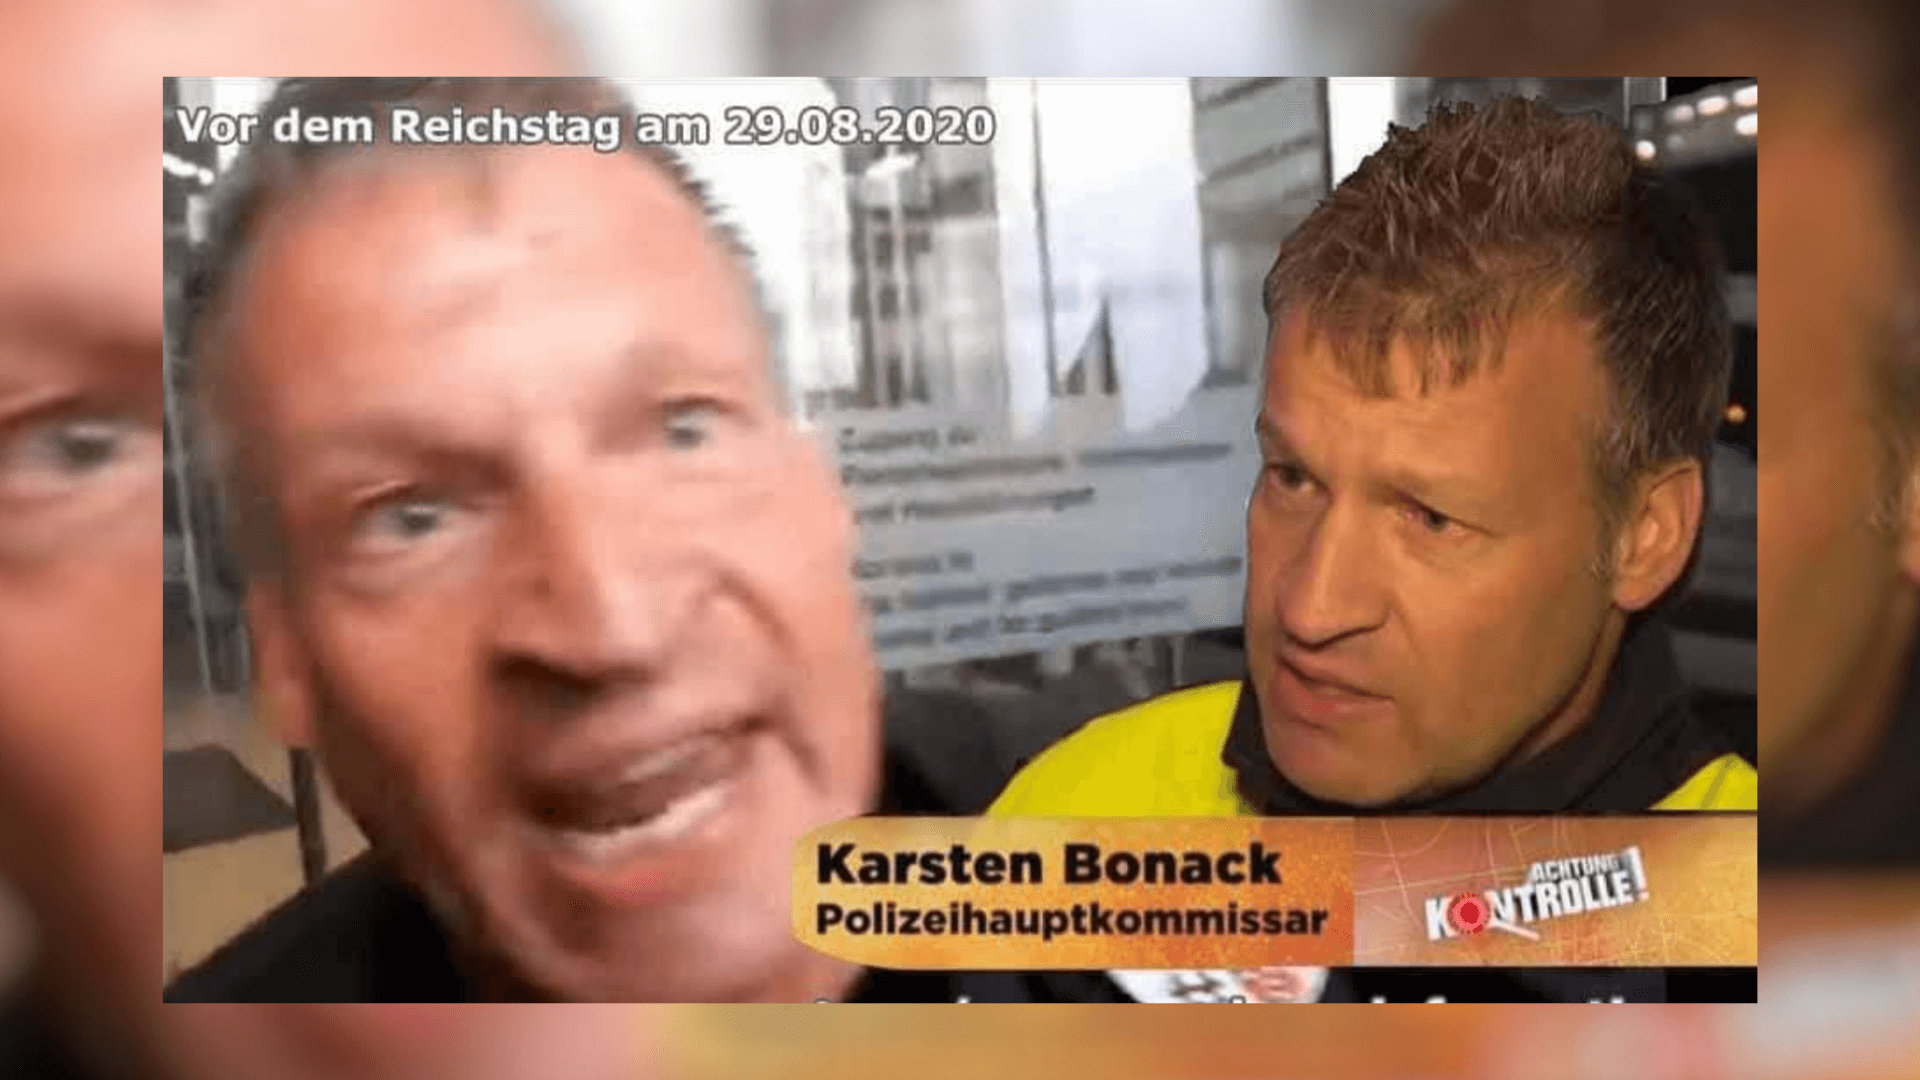 Polizeihauptkommissar Karsten Bonack ist kein Schauspieler, aber er war Protagonist in einer TV-Sendung. (Quelle: Facebook, Screenshot: CORRECTIV)